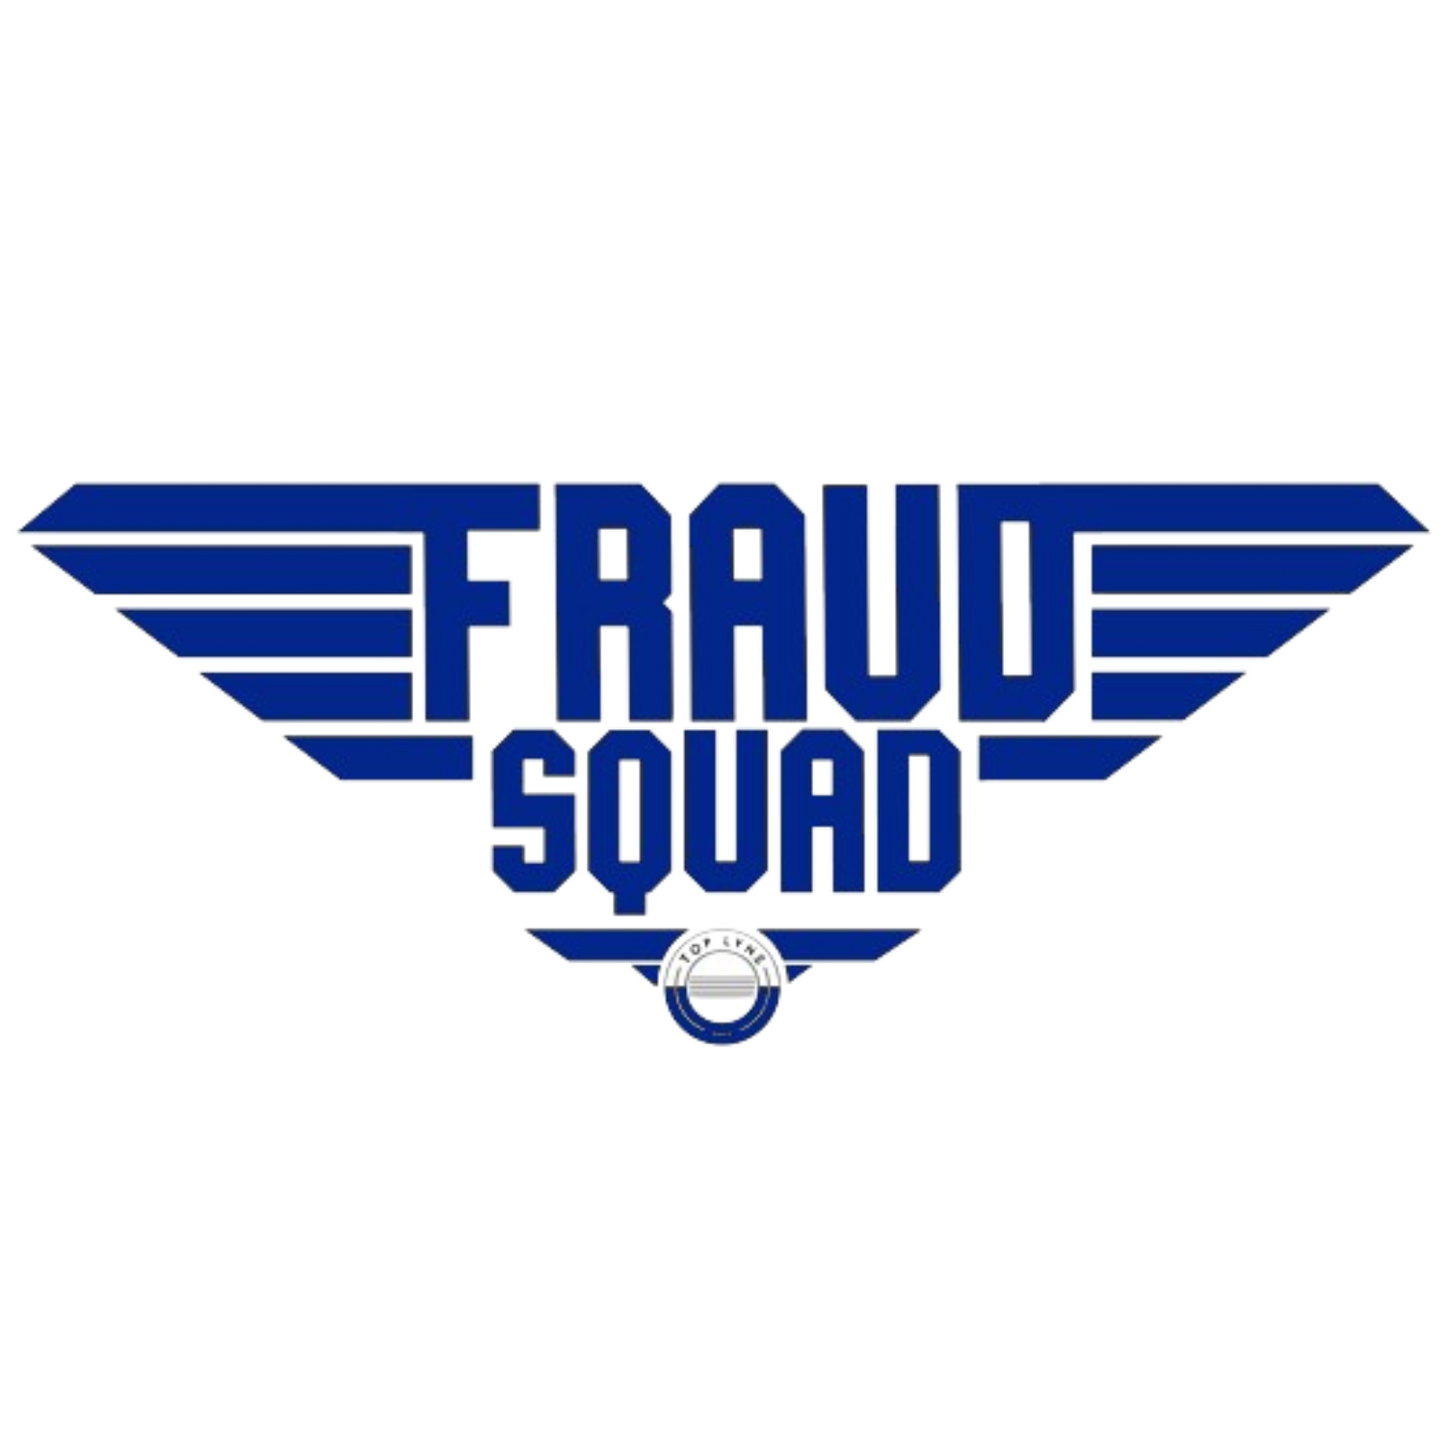 TLM Fraud Squad Hoodie